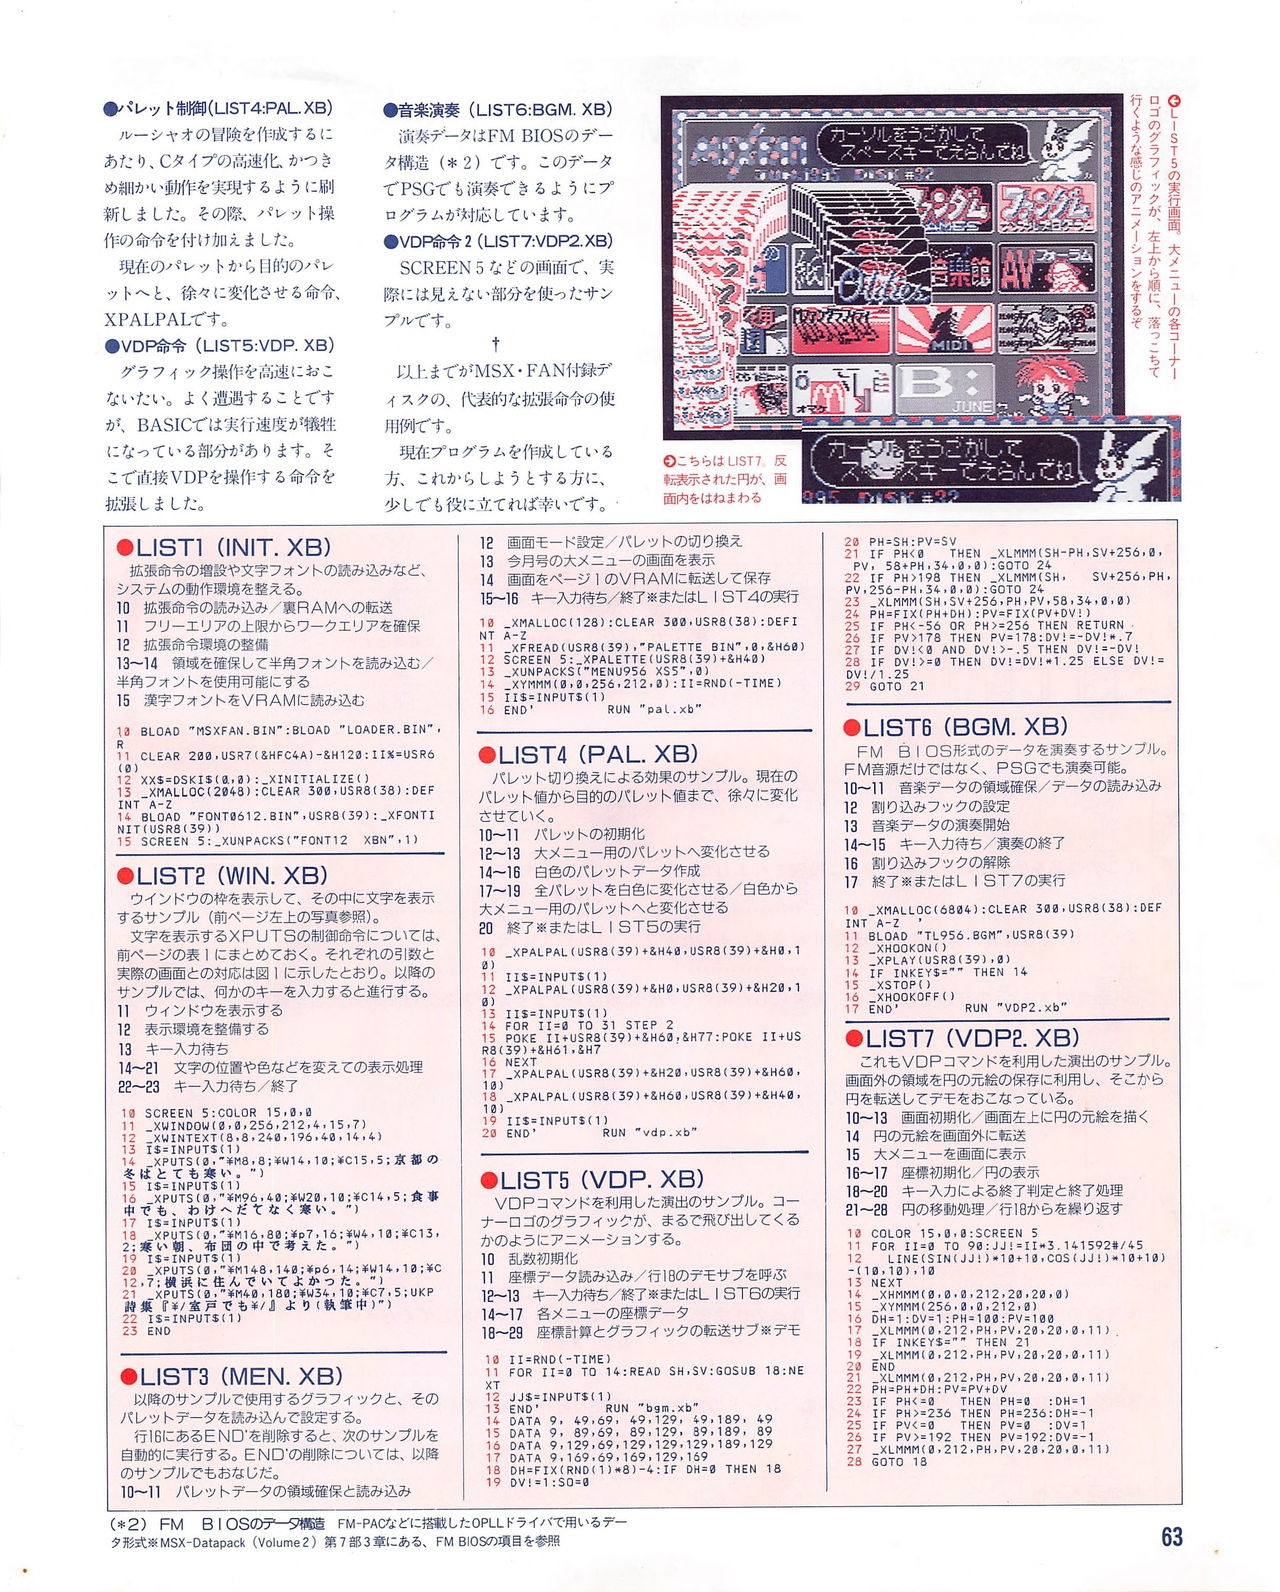 MSX Fan 1995-06 62